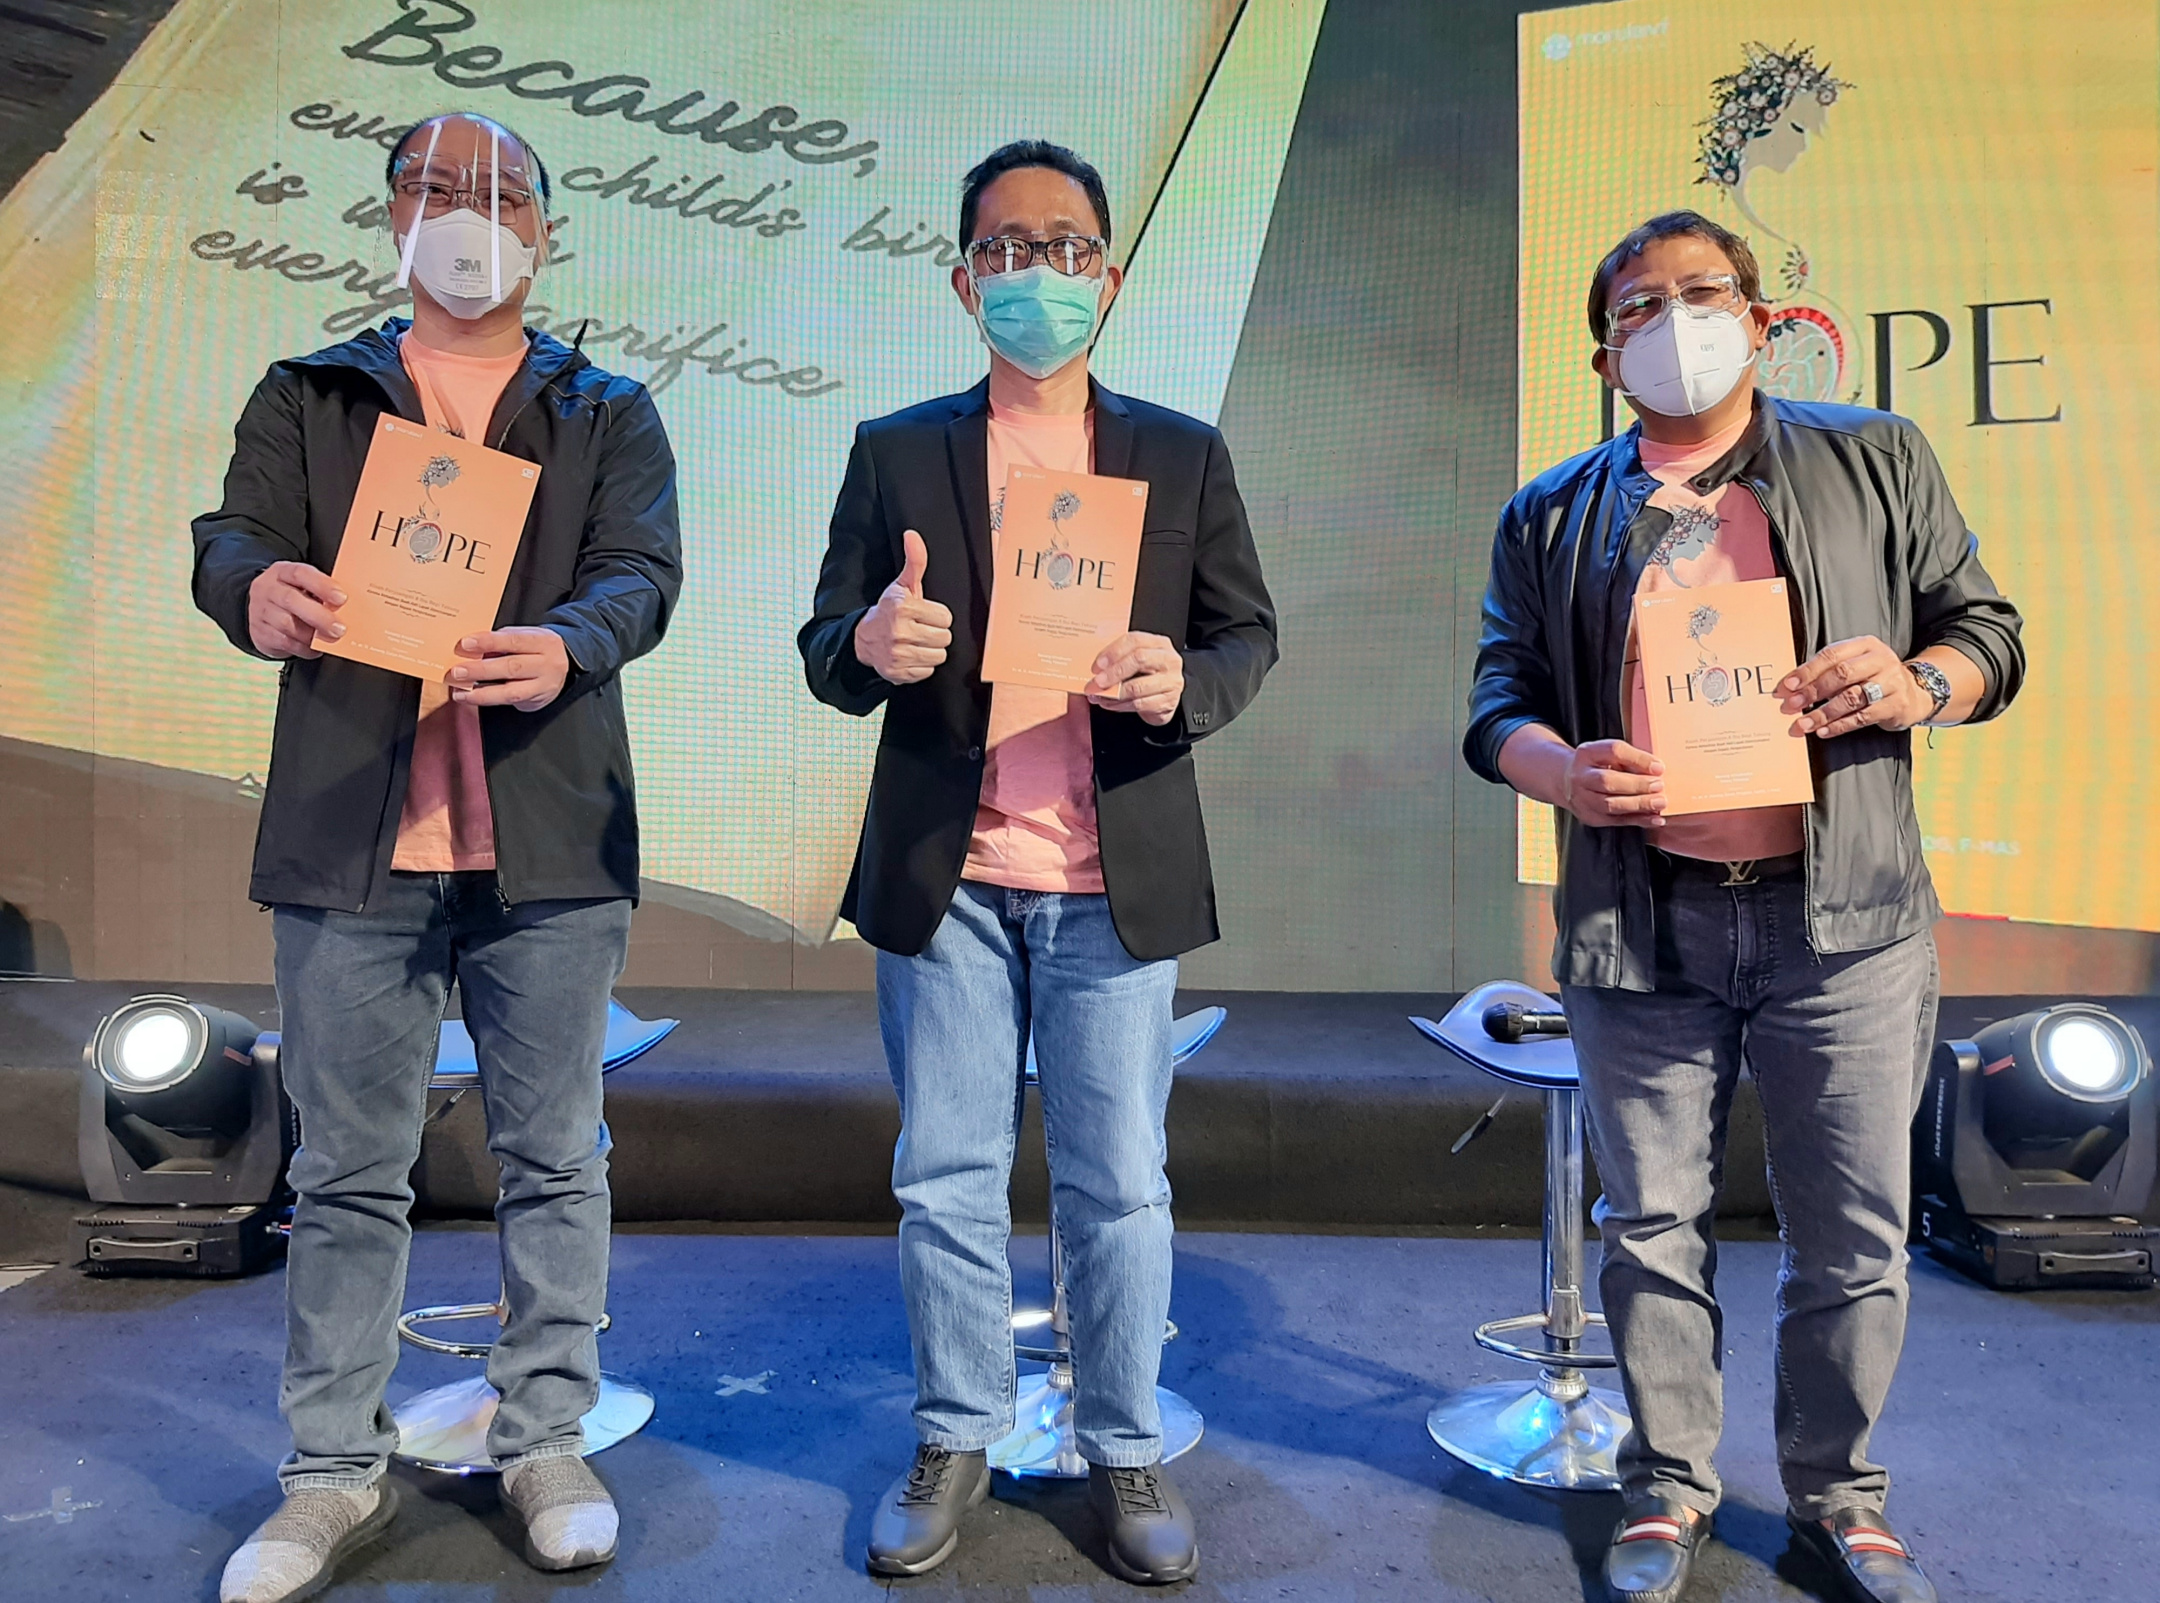 Doker Amang Surya (paling kiri) bersama dua dokter Morula IVF lainnya saat menunjukan buku yang berjudul 'HOPE' bercerita tentang perjuangan pasutri dalam melakukan bayi tabung. (Foto: Pita Sari/Ngopibareng.id)